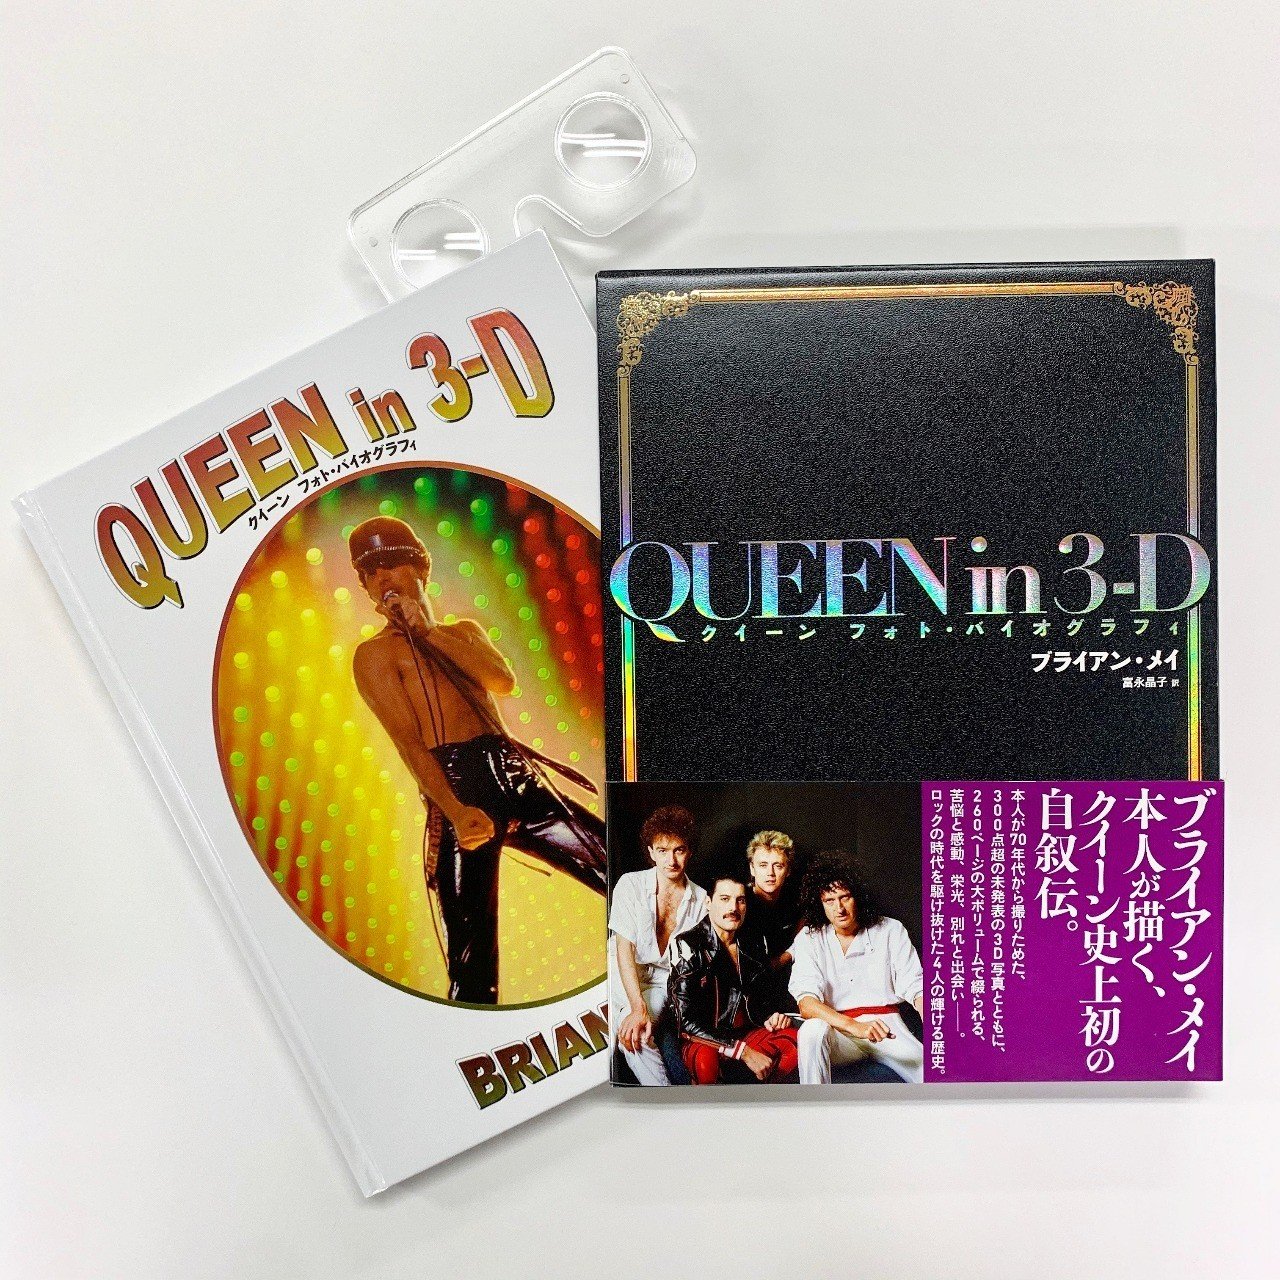 伝説の歴史を味わう Music Life 元編集長 増田勇一氏による Queen In 3 D 最速レビュー 本がひらく